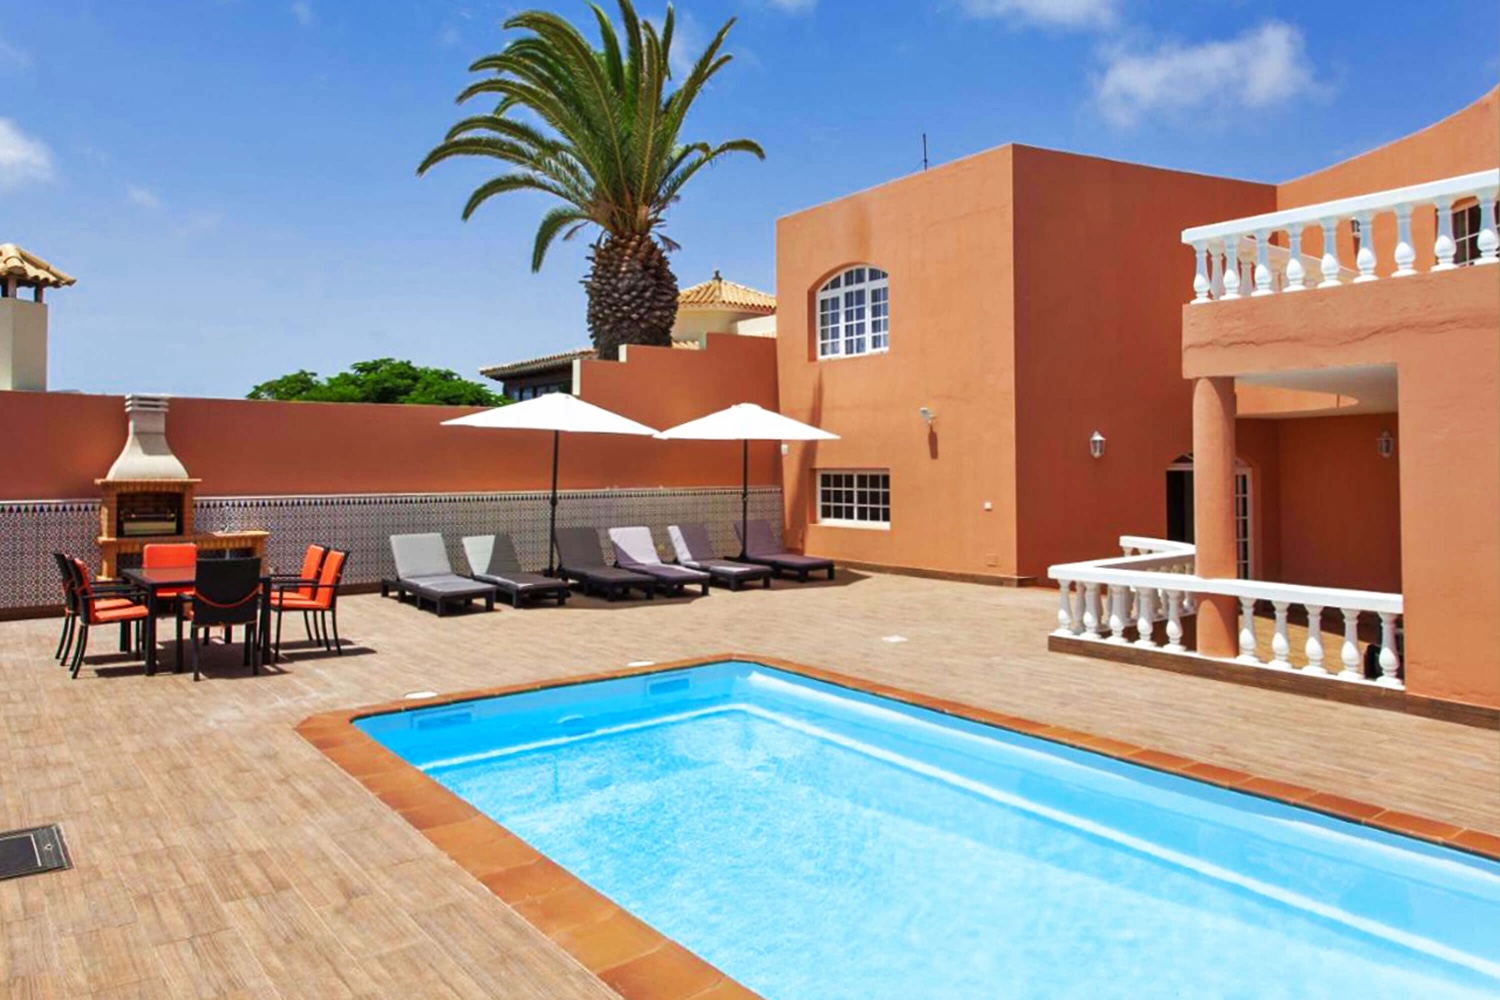 Moderní prázdninový dům s vlastním bazénem pro odpočinkovou dovolenou na pláži v Caleta de Fuste